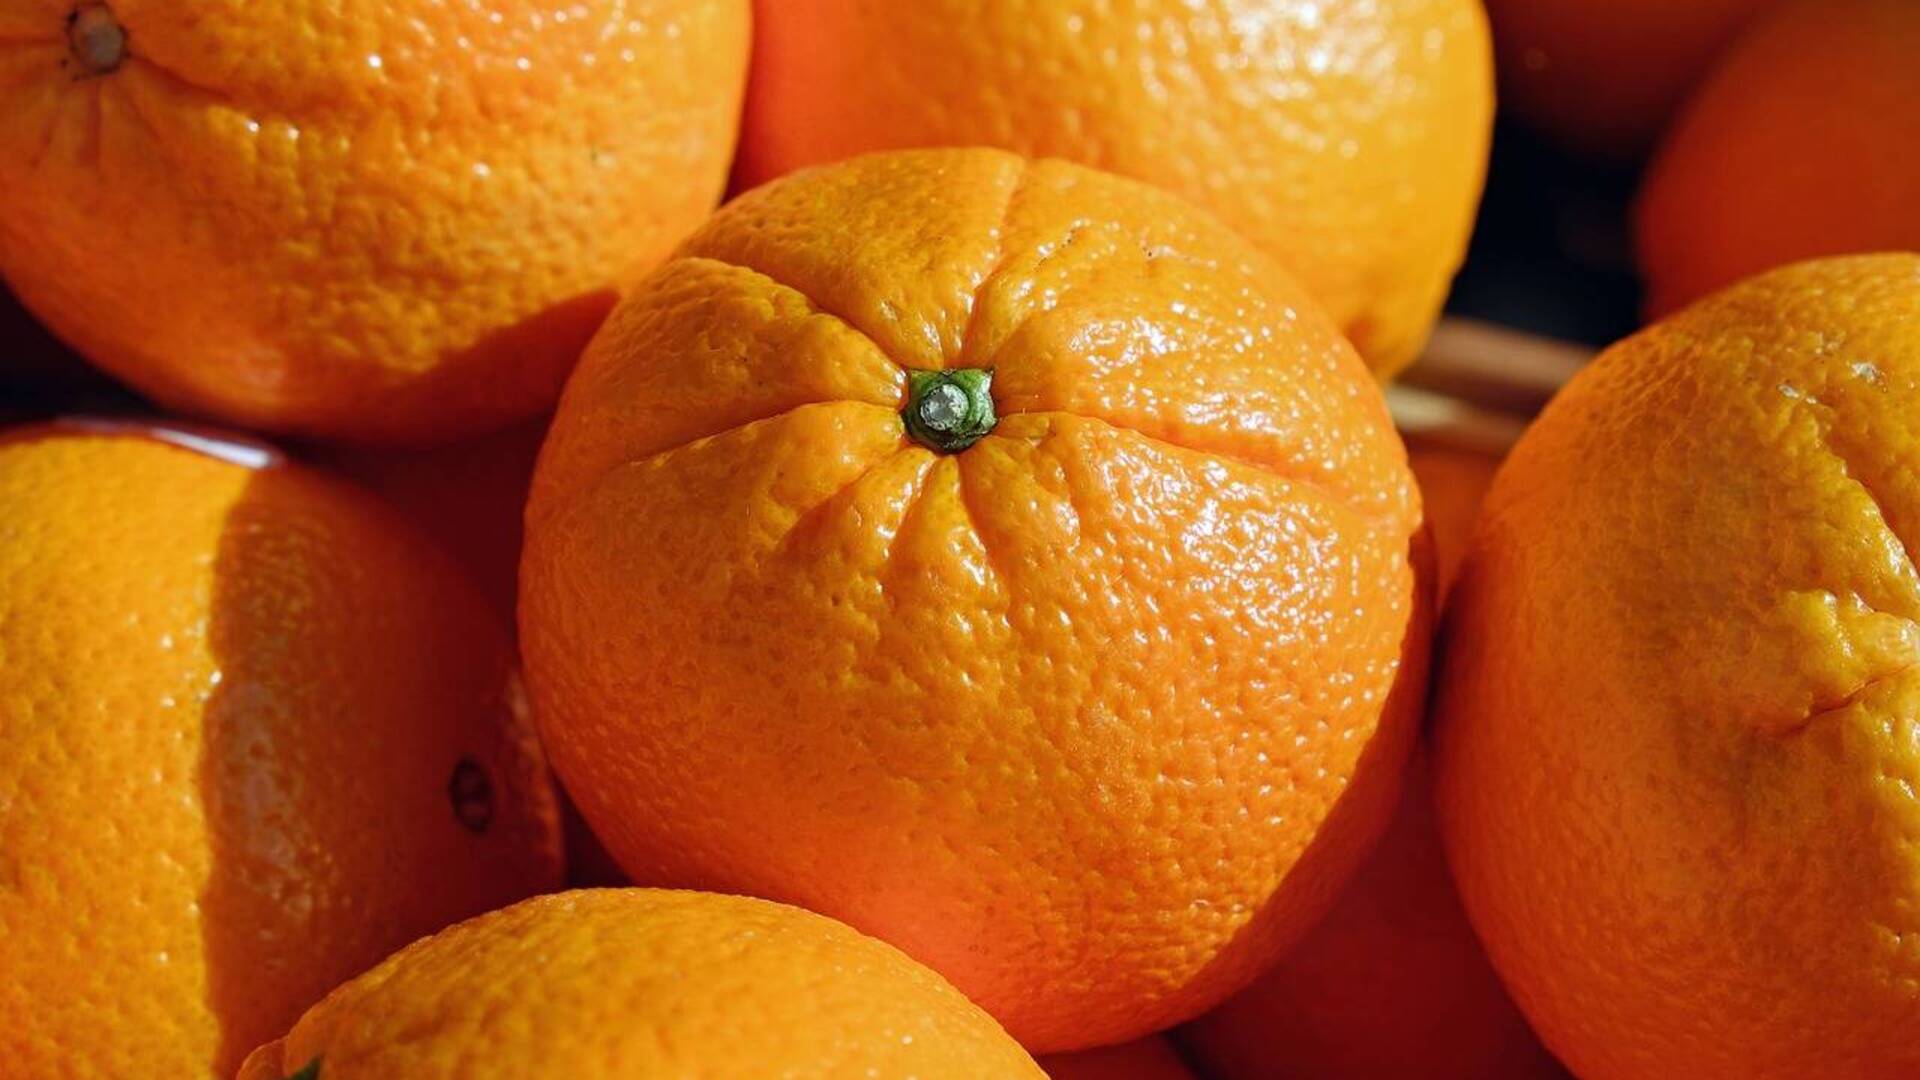 Solaro, alla Pirandello “Le arance della salute”